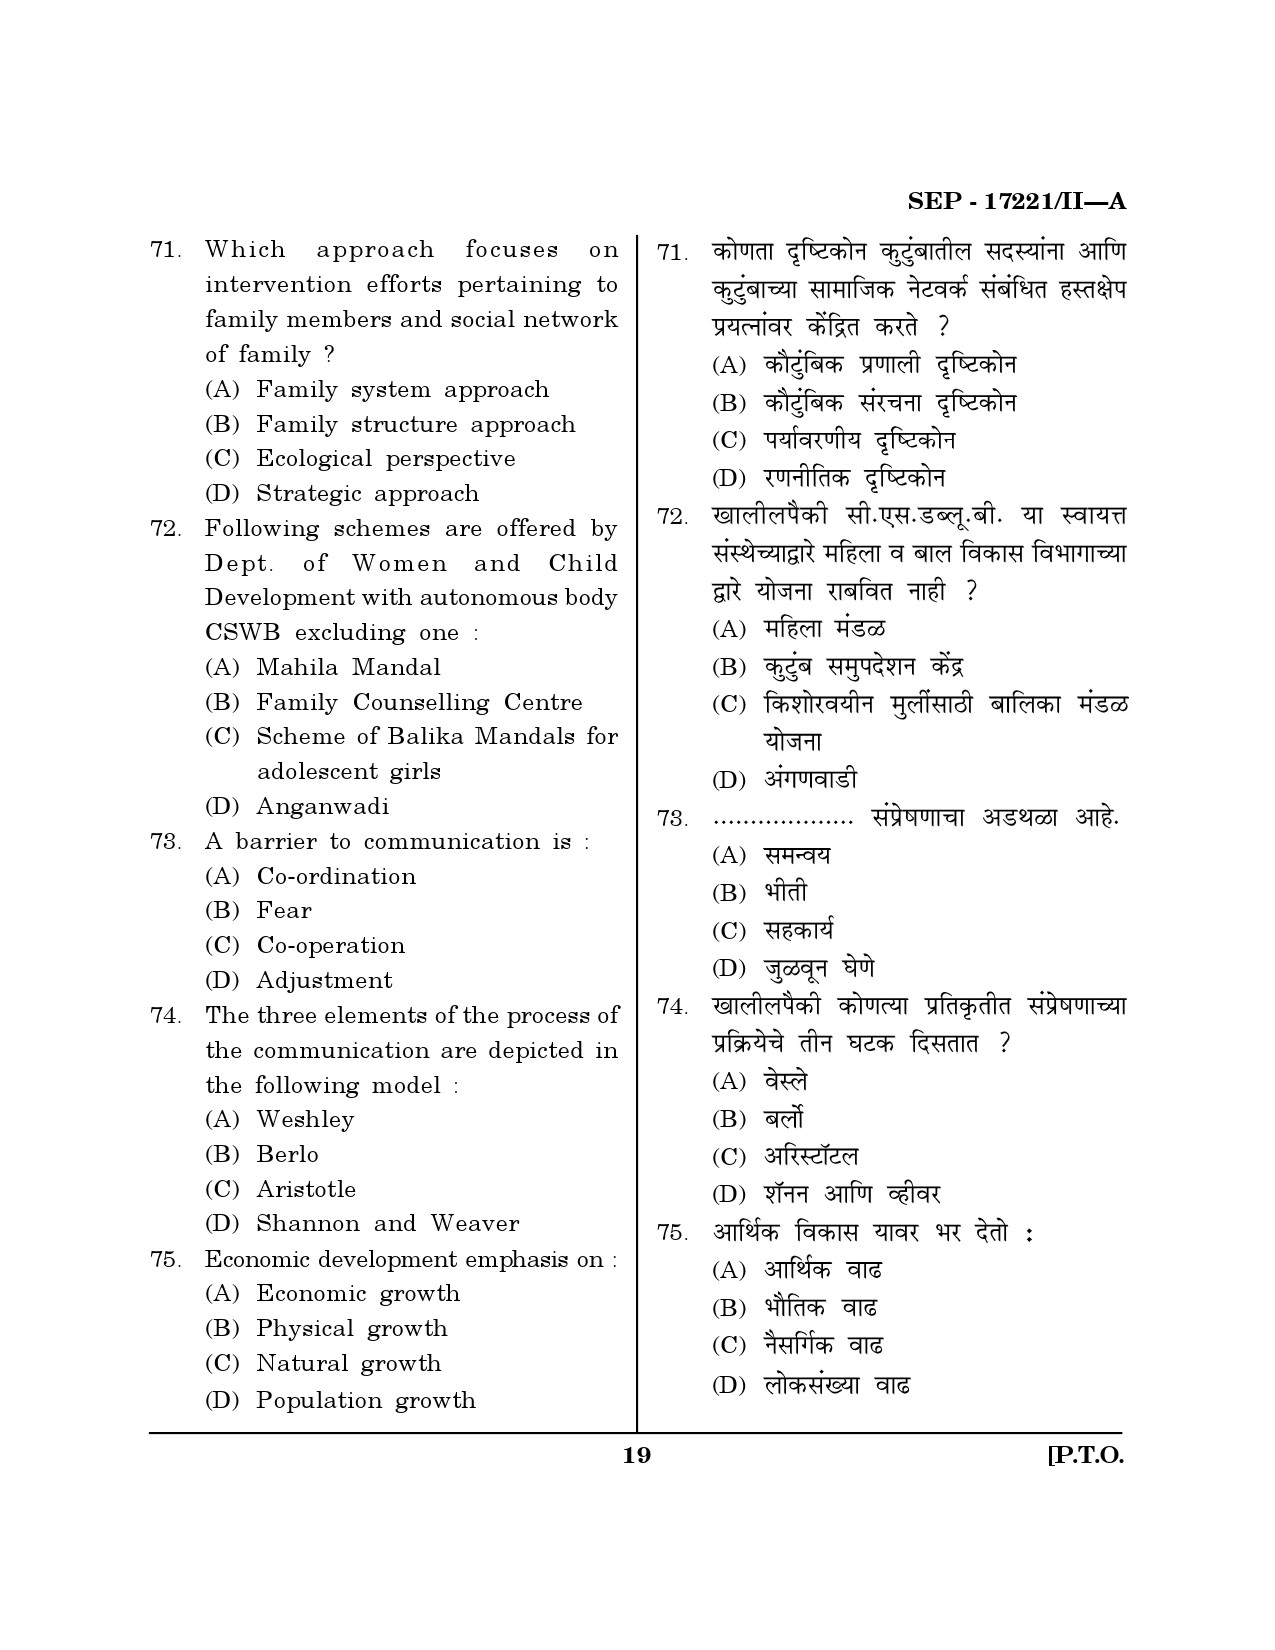 Maharashtra SET Home Science Exam Question Paper September 2021 18